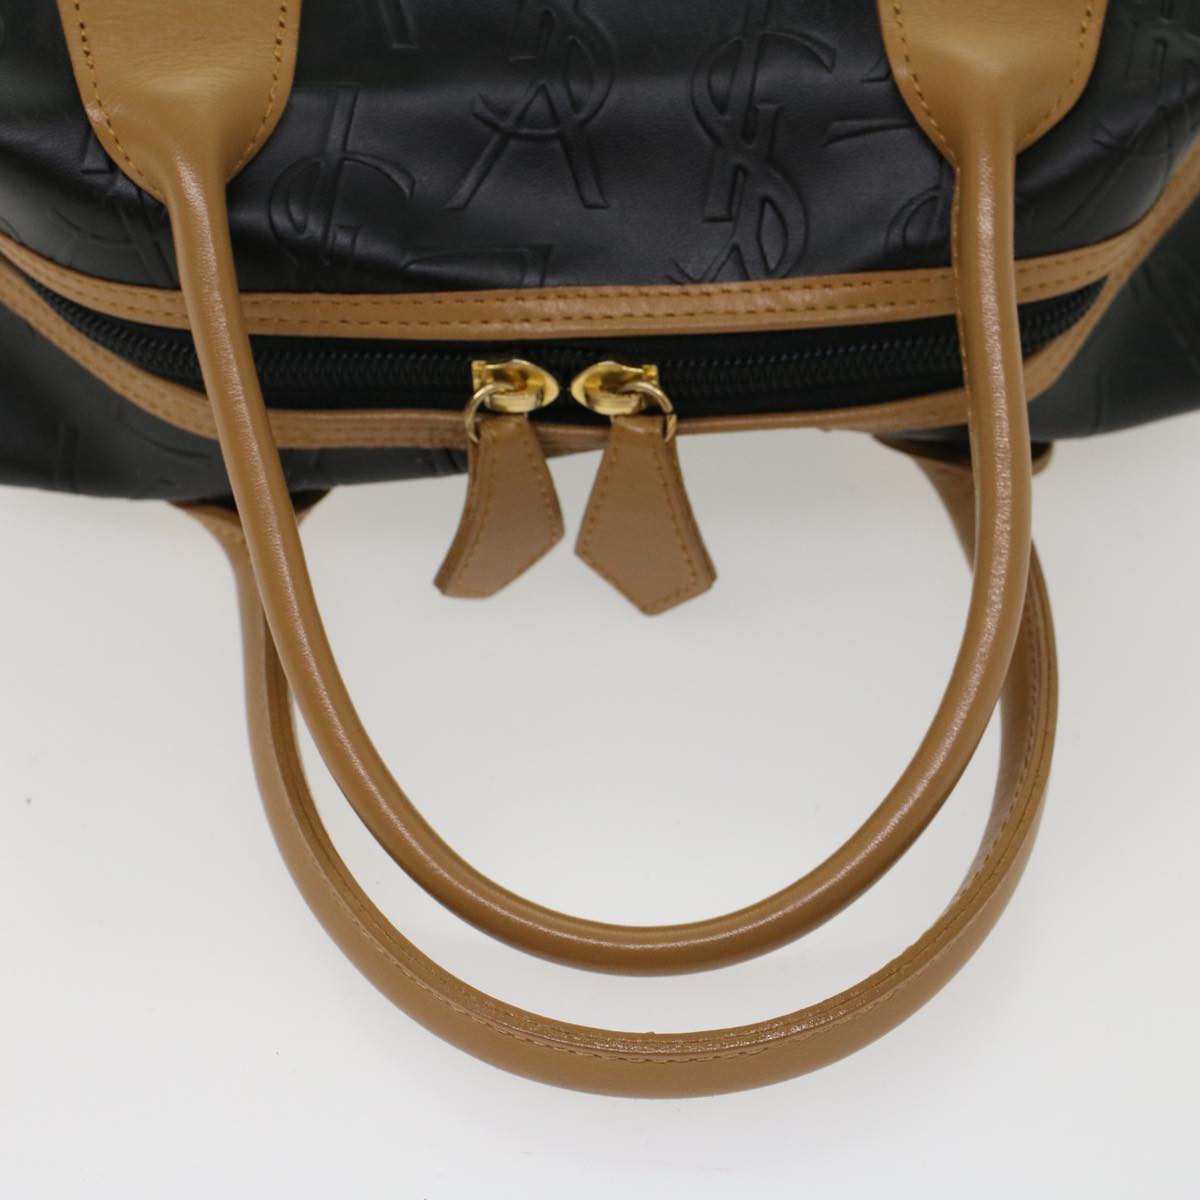 SAINT LAURENT Hand Bag PVC Leather Black Auth yk7824B